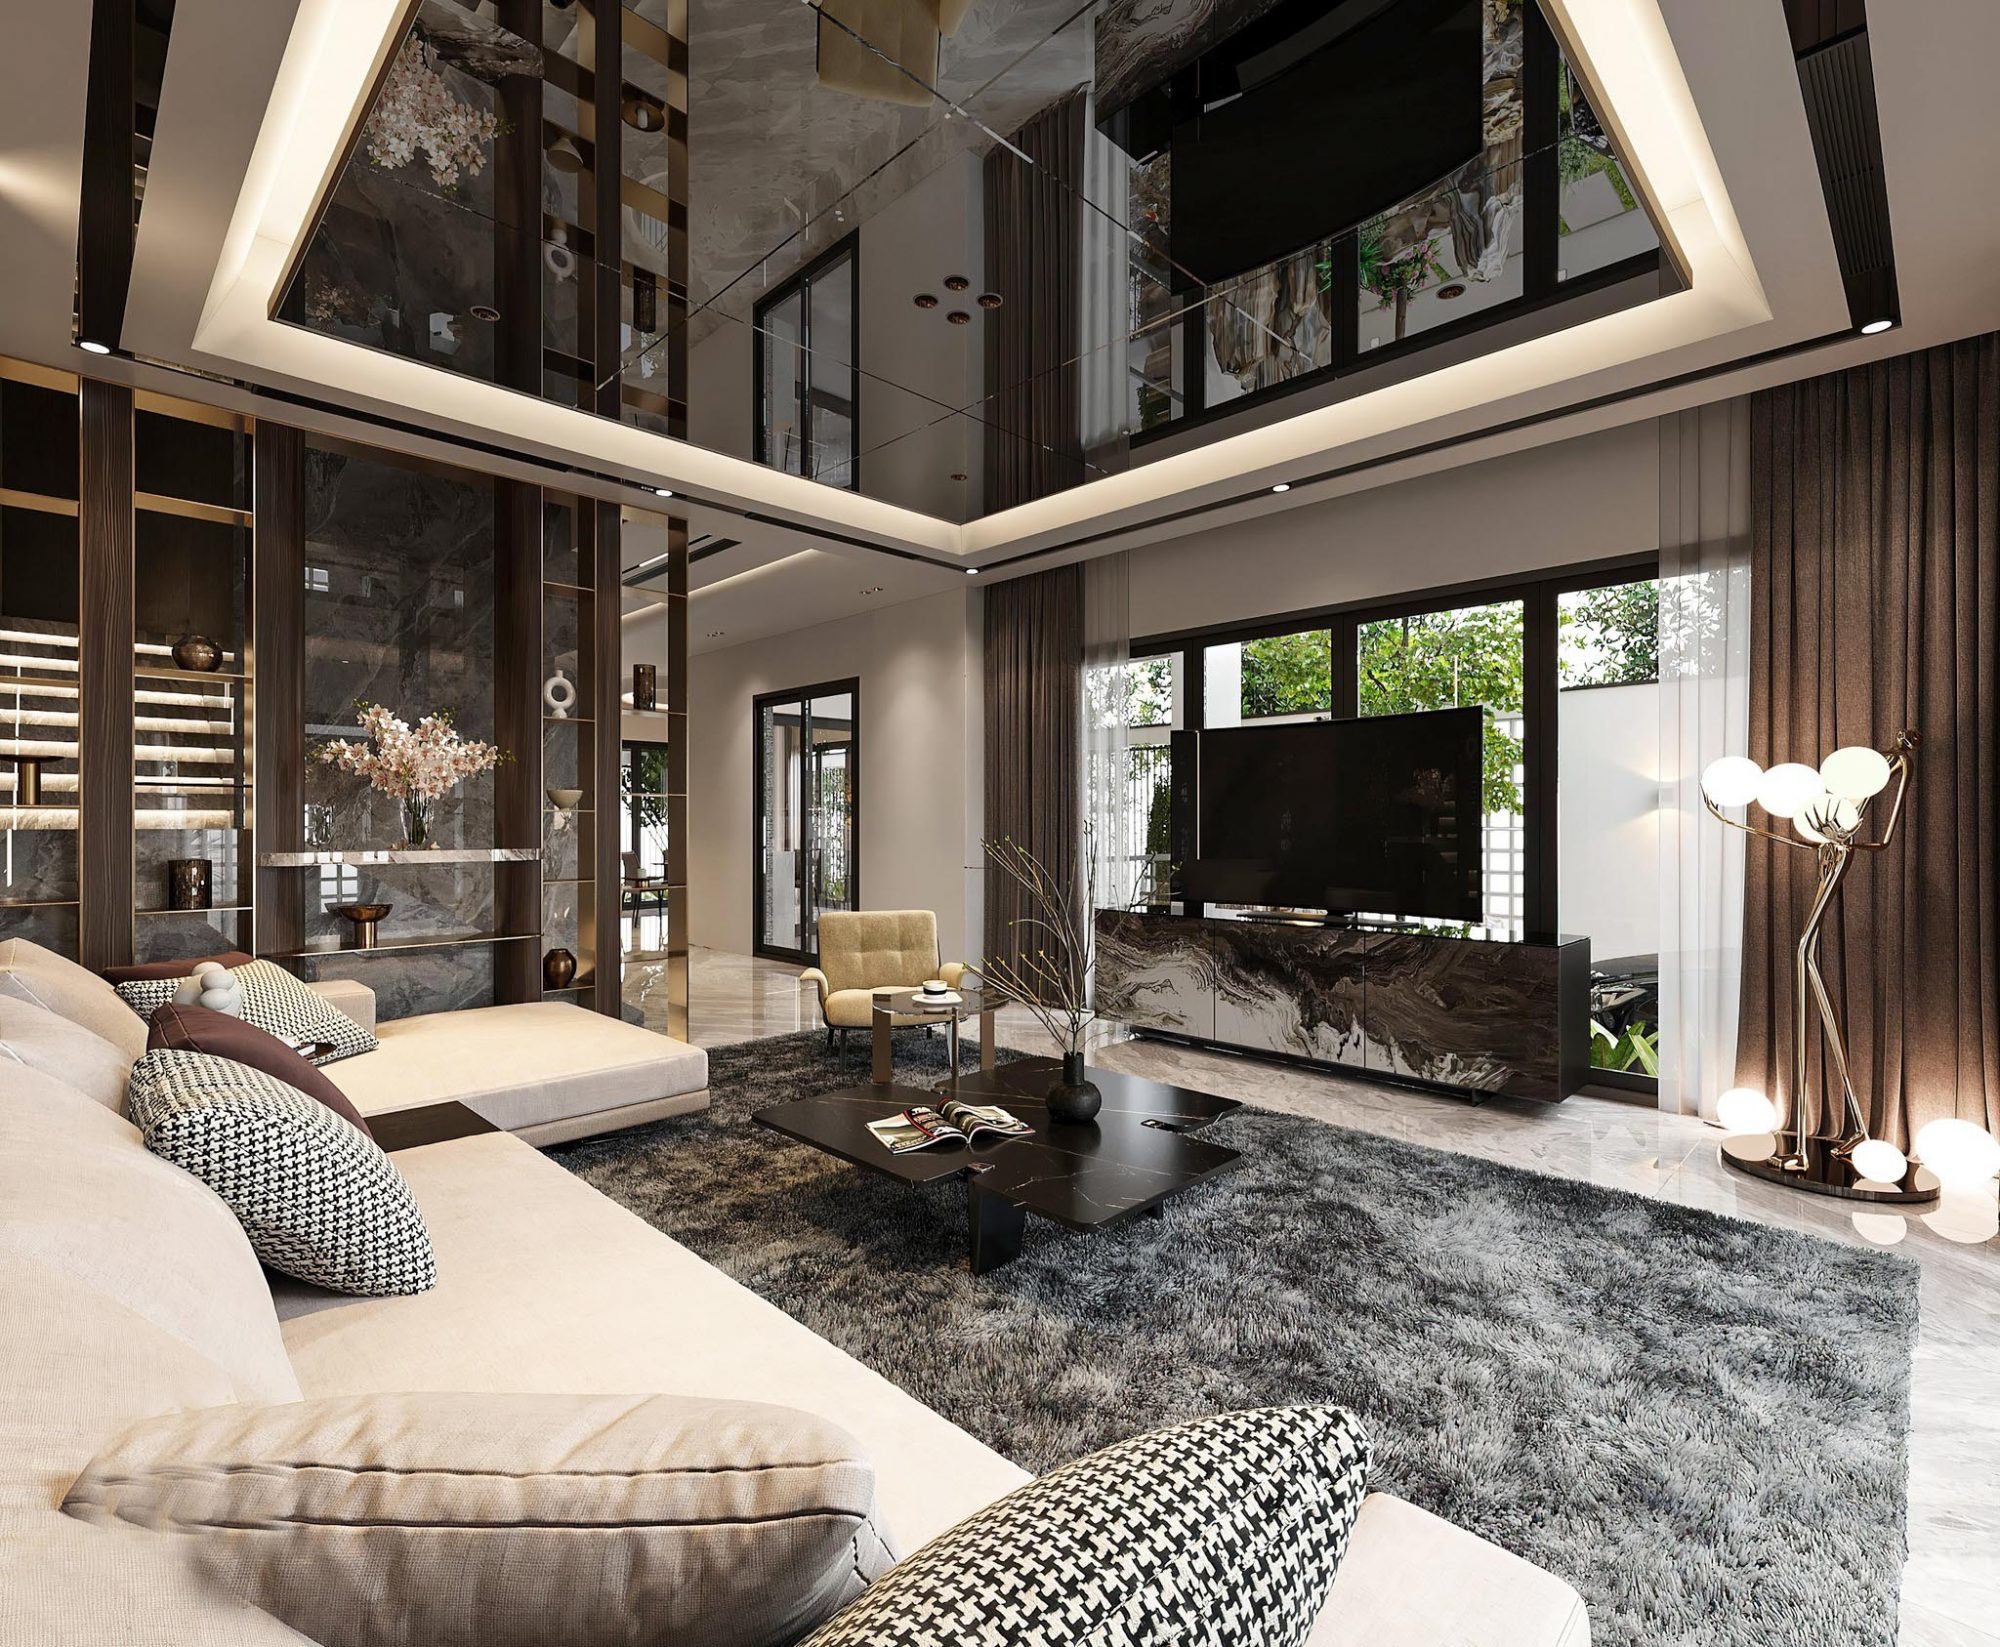 Thiết kế nội thất Villa Hiện đại ngoại ô Hà Nội – Anh Bình